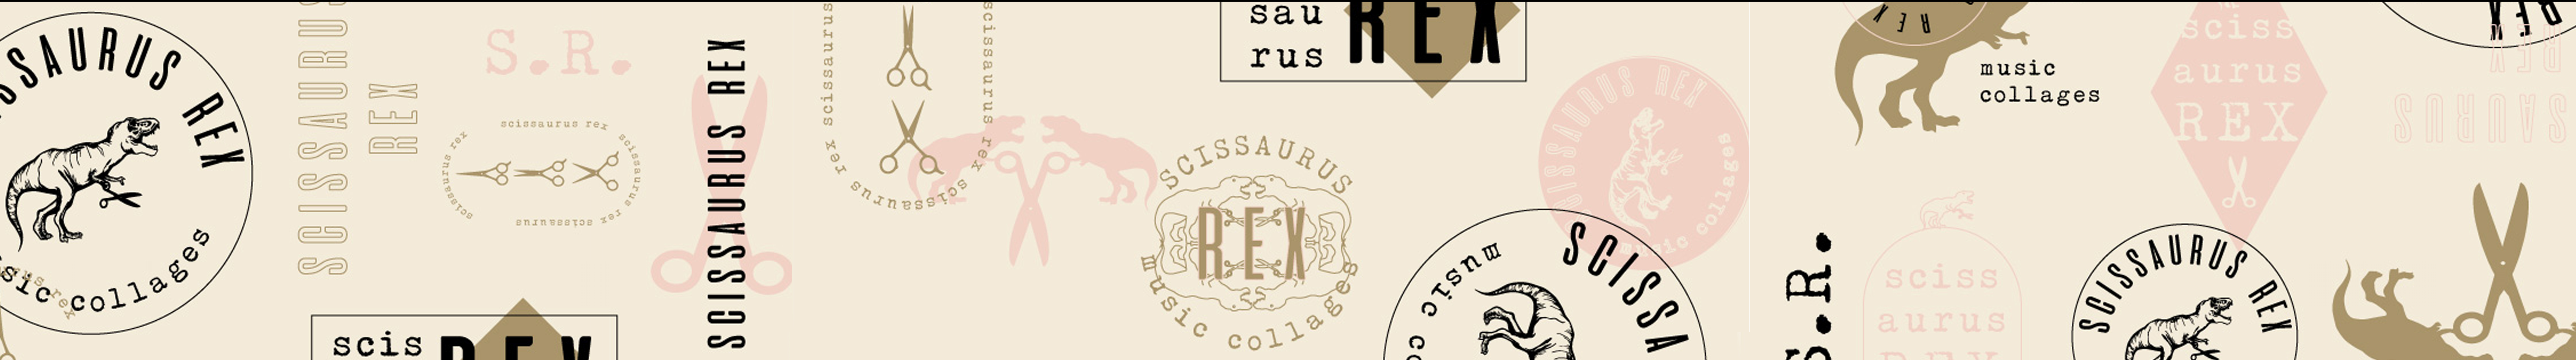 SCISSAURUS RËX's profile banner